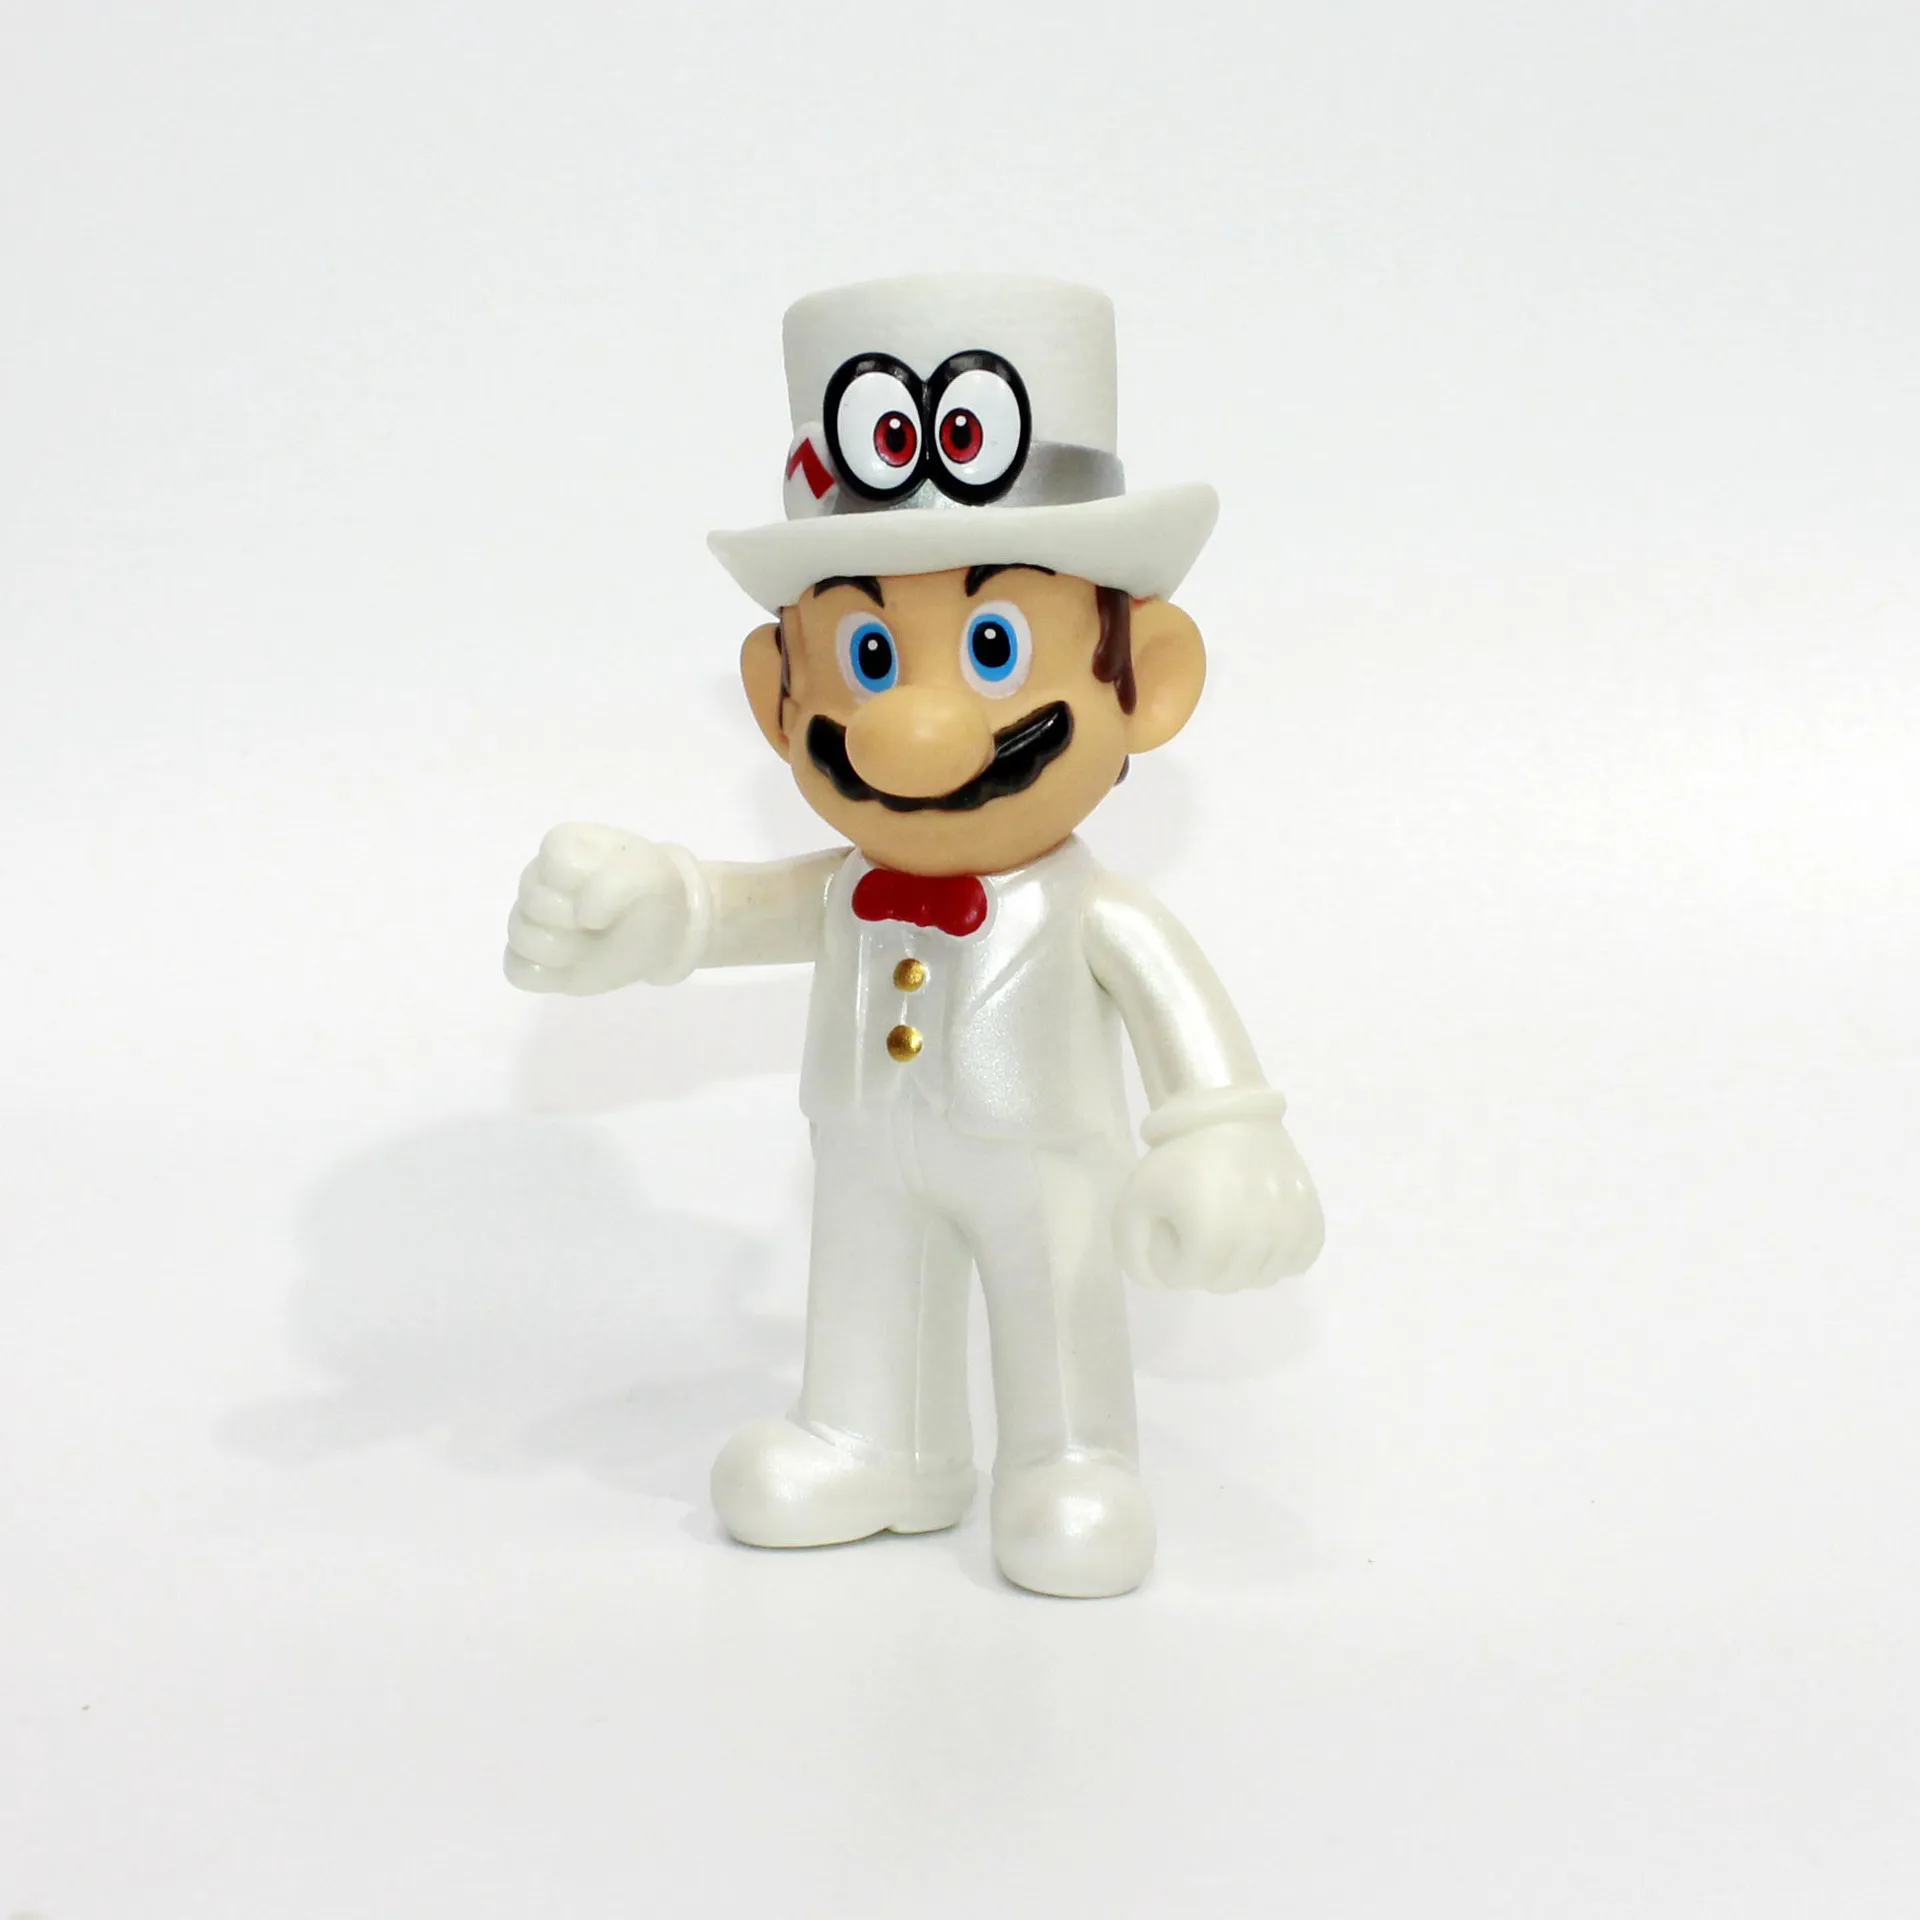 Супер Марио фигурка игрушка Марио Луиджи 12 см ПВХ модель игрушки для детей день рождения Рождественский подарок